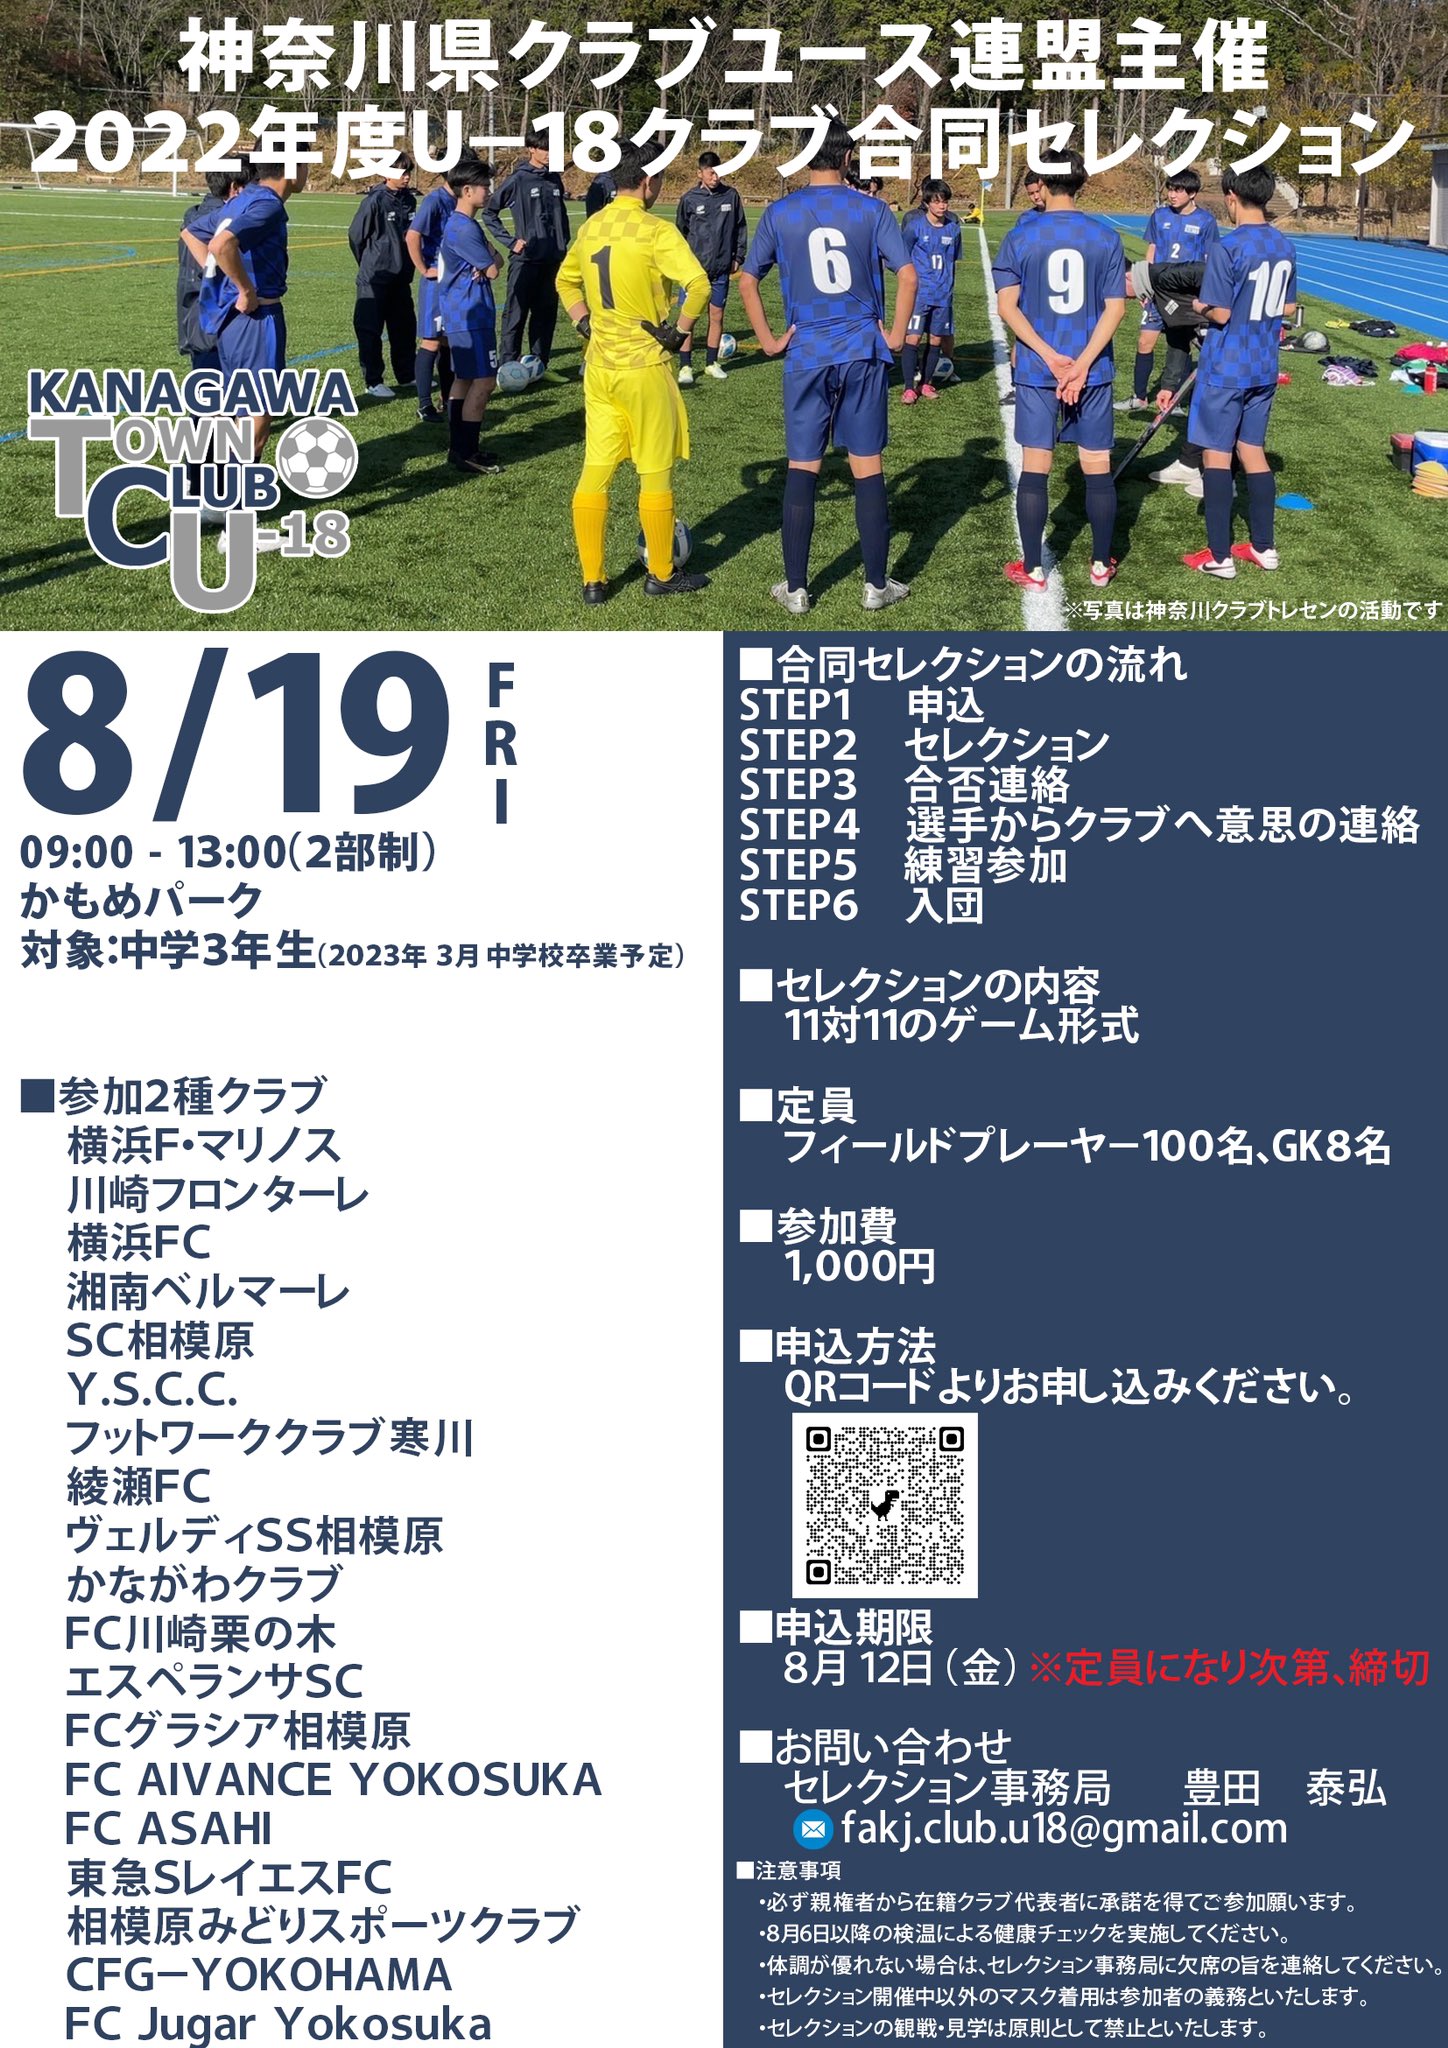 神奈川県ジュニアサッカー Trm イベント告知 Kangawasoccer Twitter